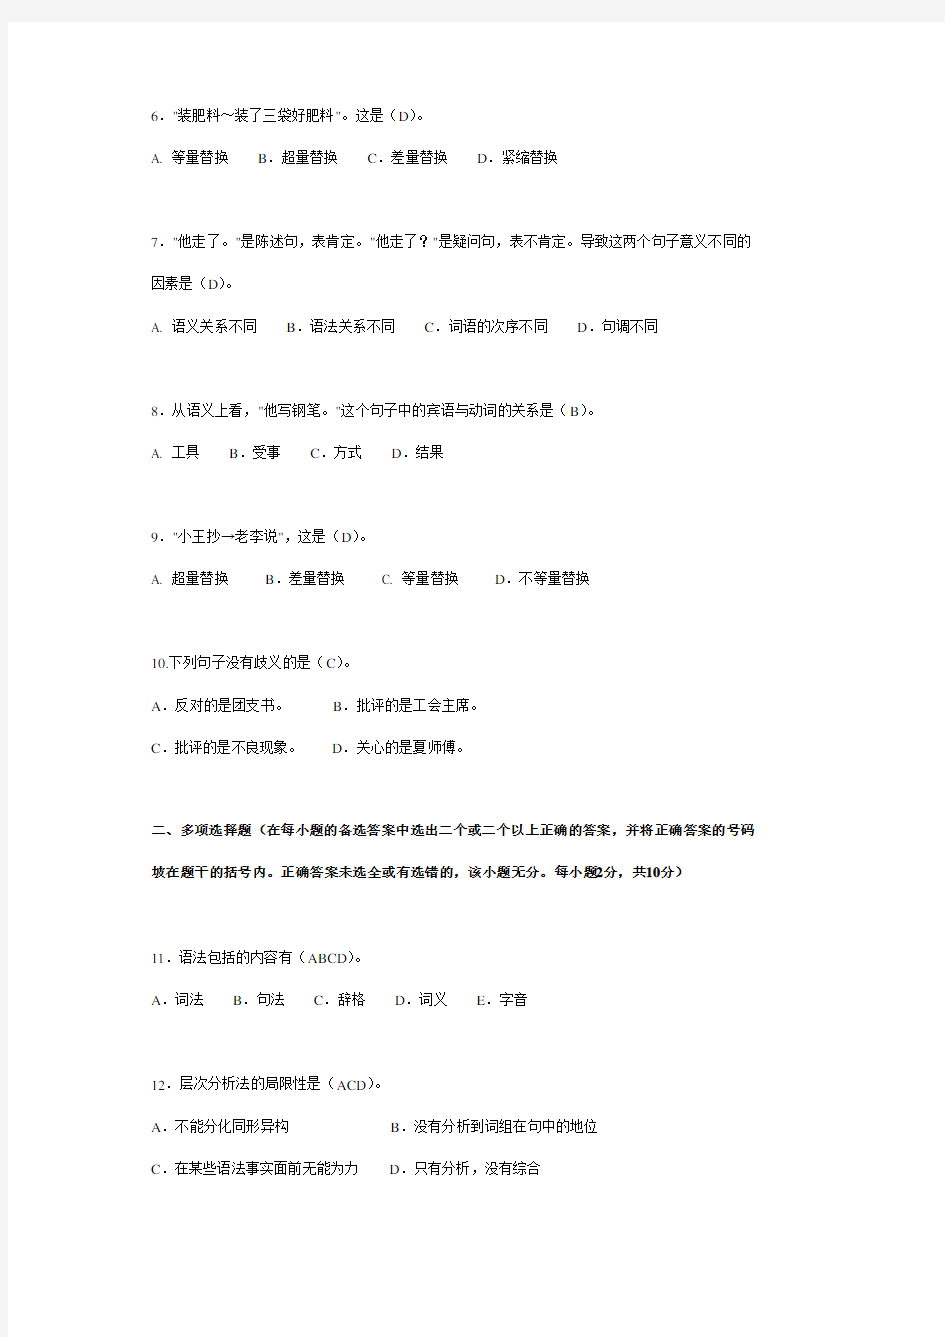 2002年4月高等教育自学考试全国统一命题考试现代汉语语法学